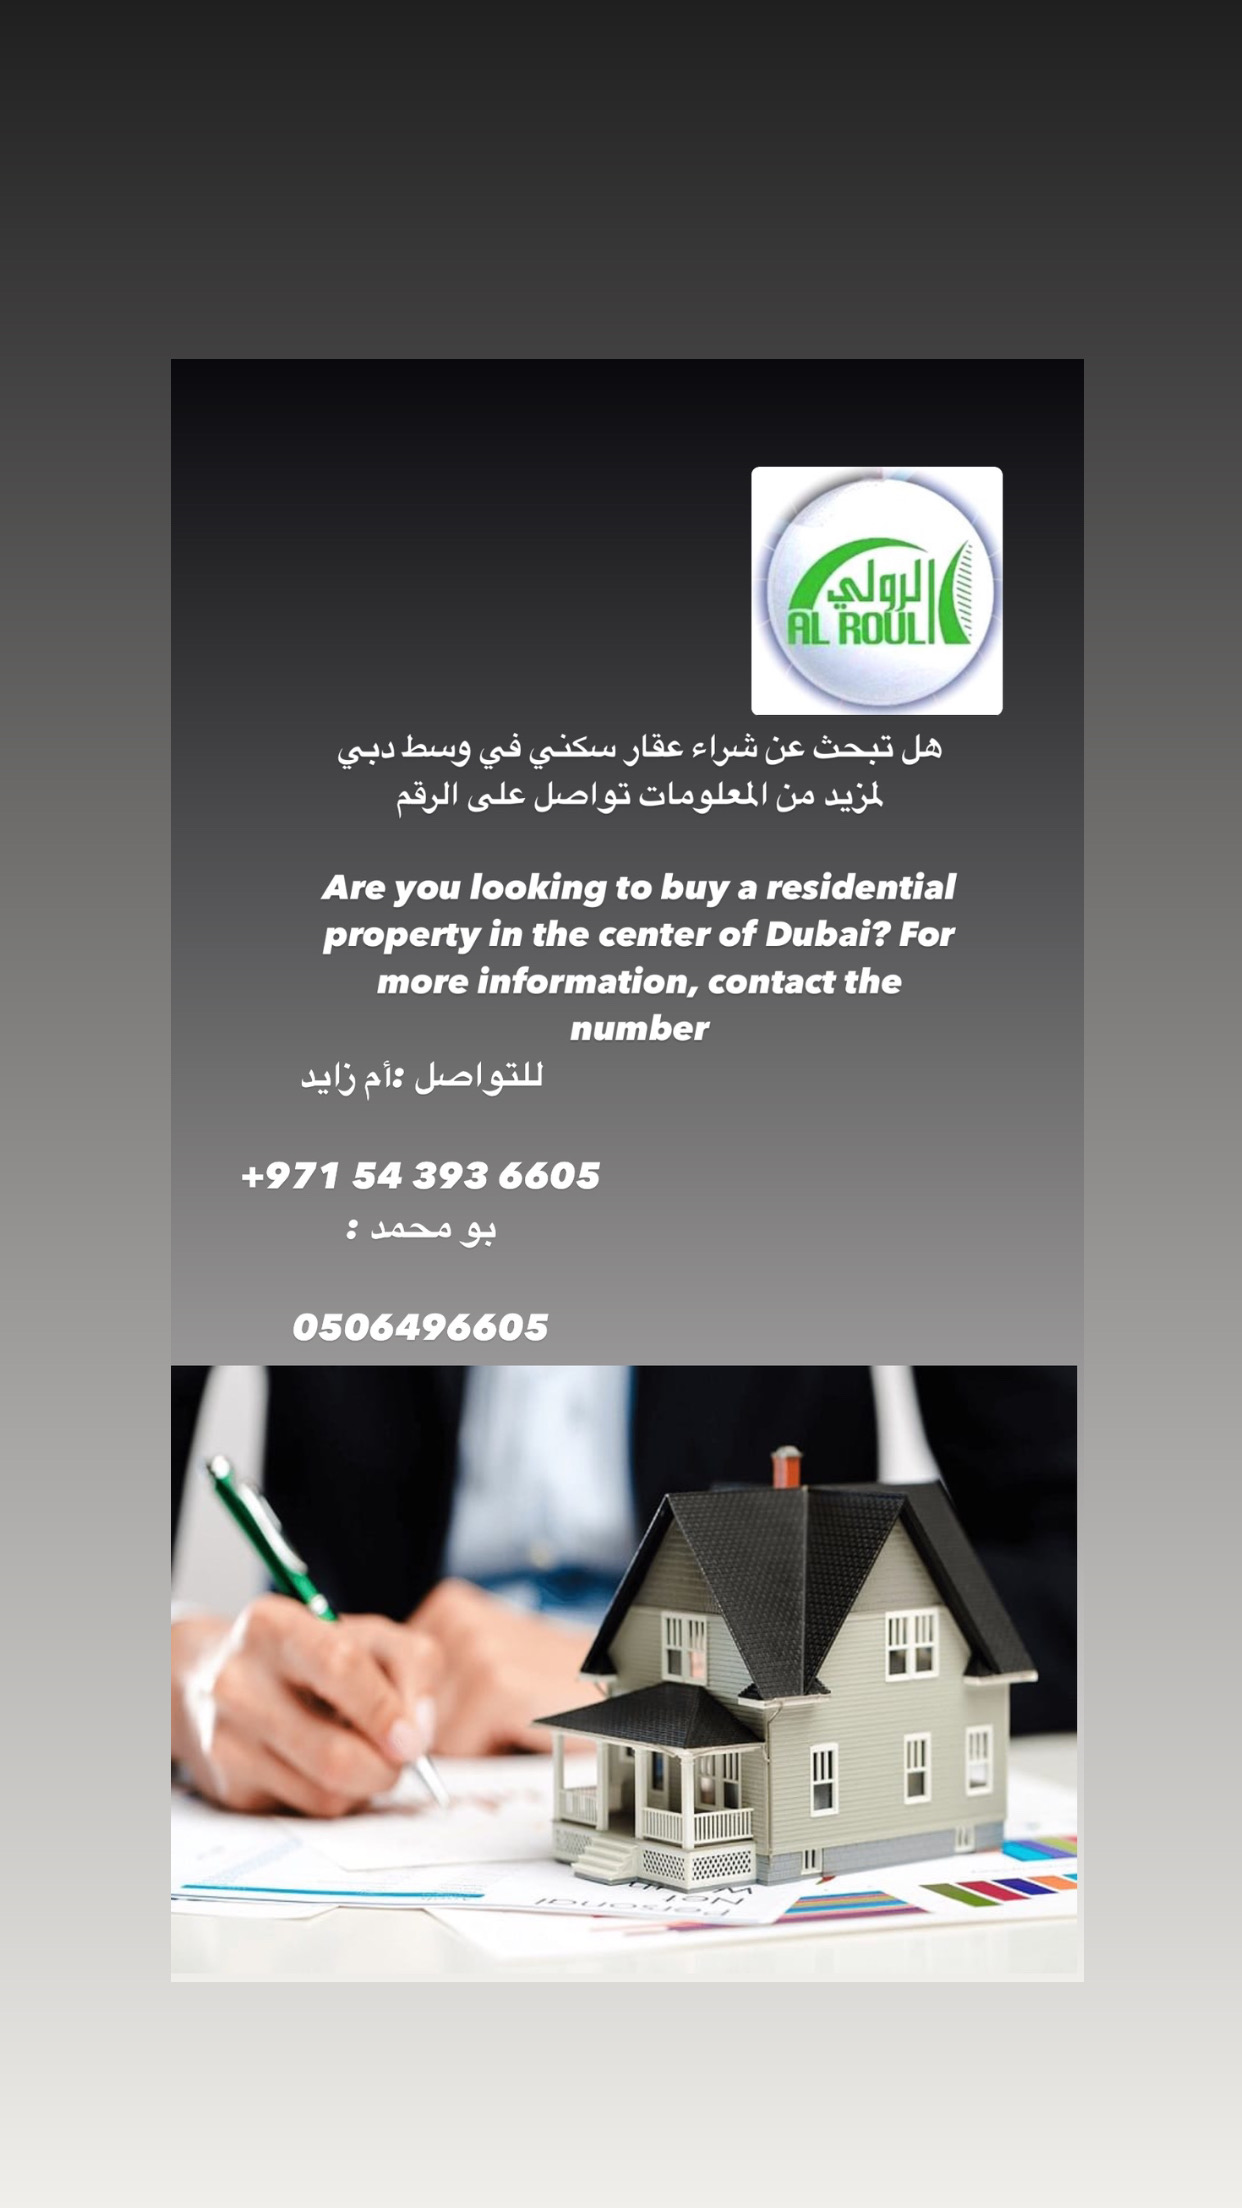 هل تبحث عن شراء عقار سكني في وسط دبي لمزيد من المعلومات تواصل على الرقم